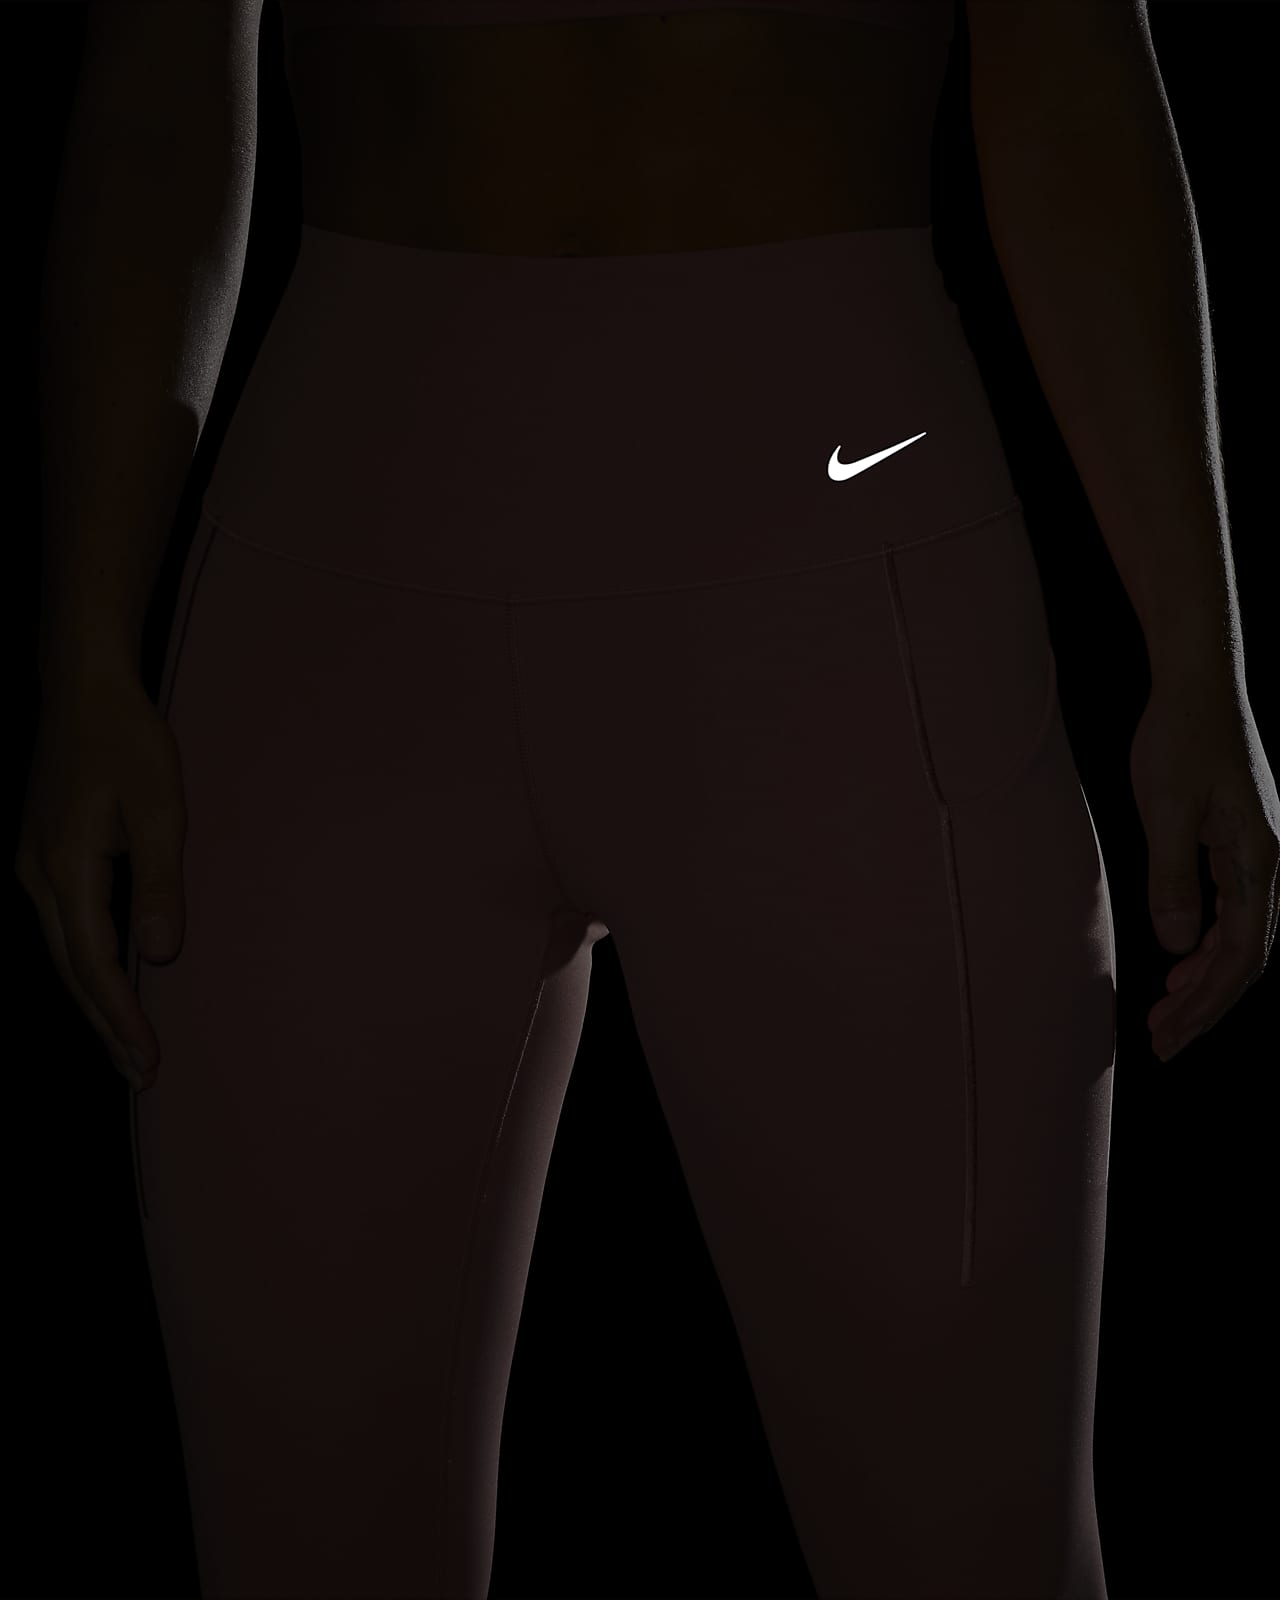 Nike Full Length Universa Leggings.